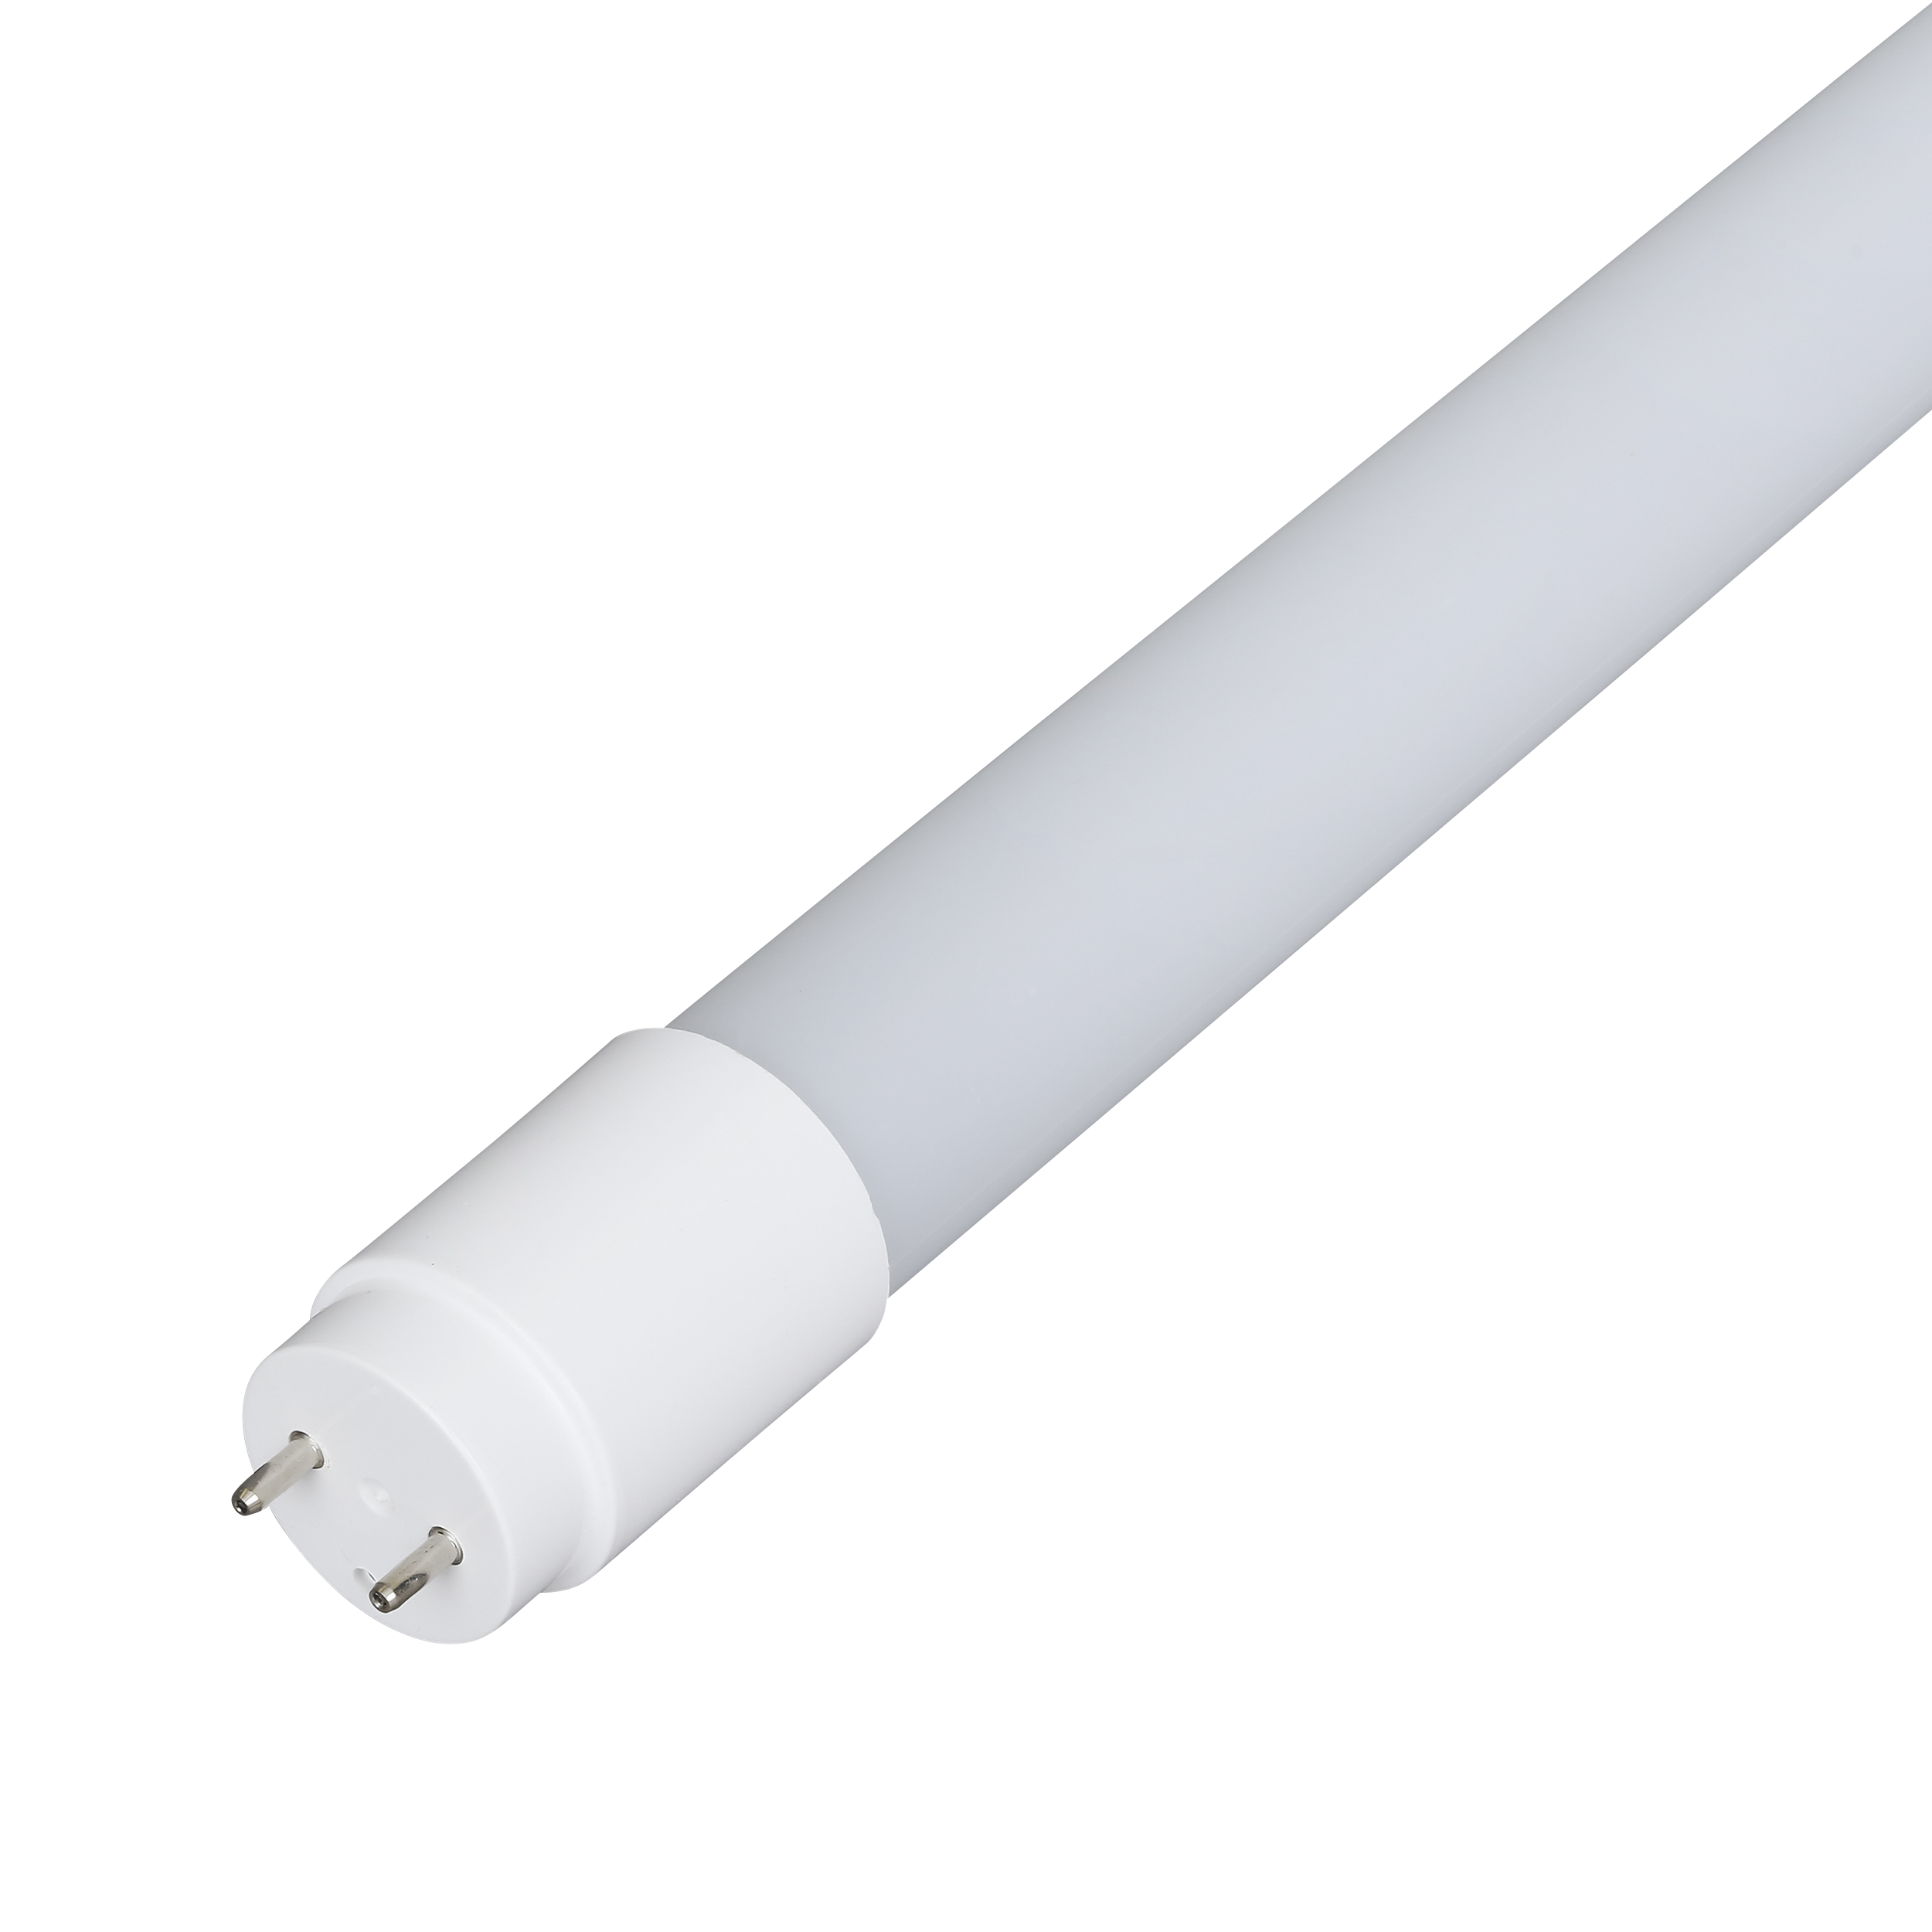 T5 fluorescent tube lengths